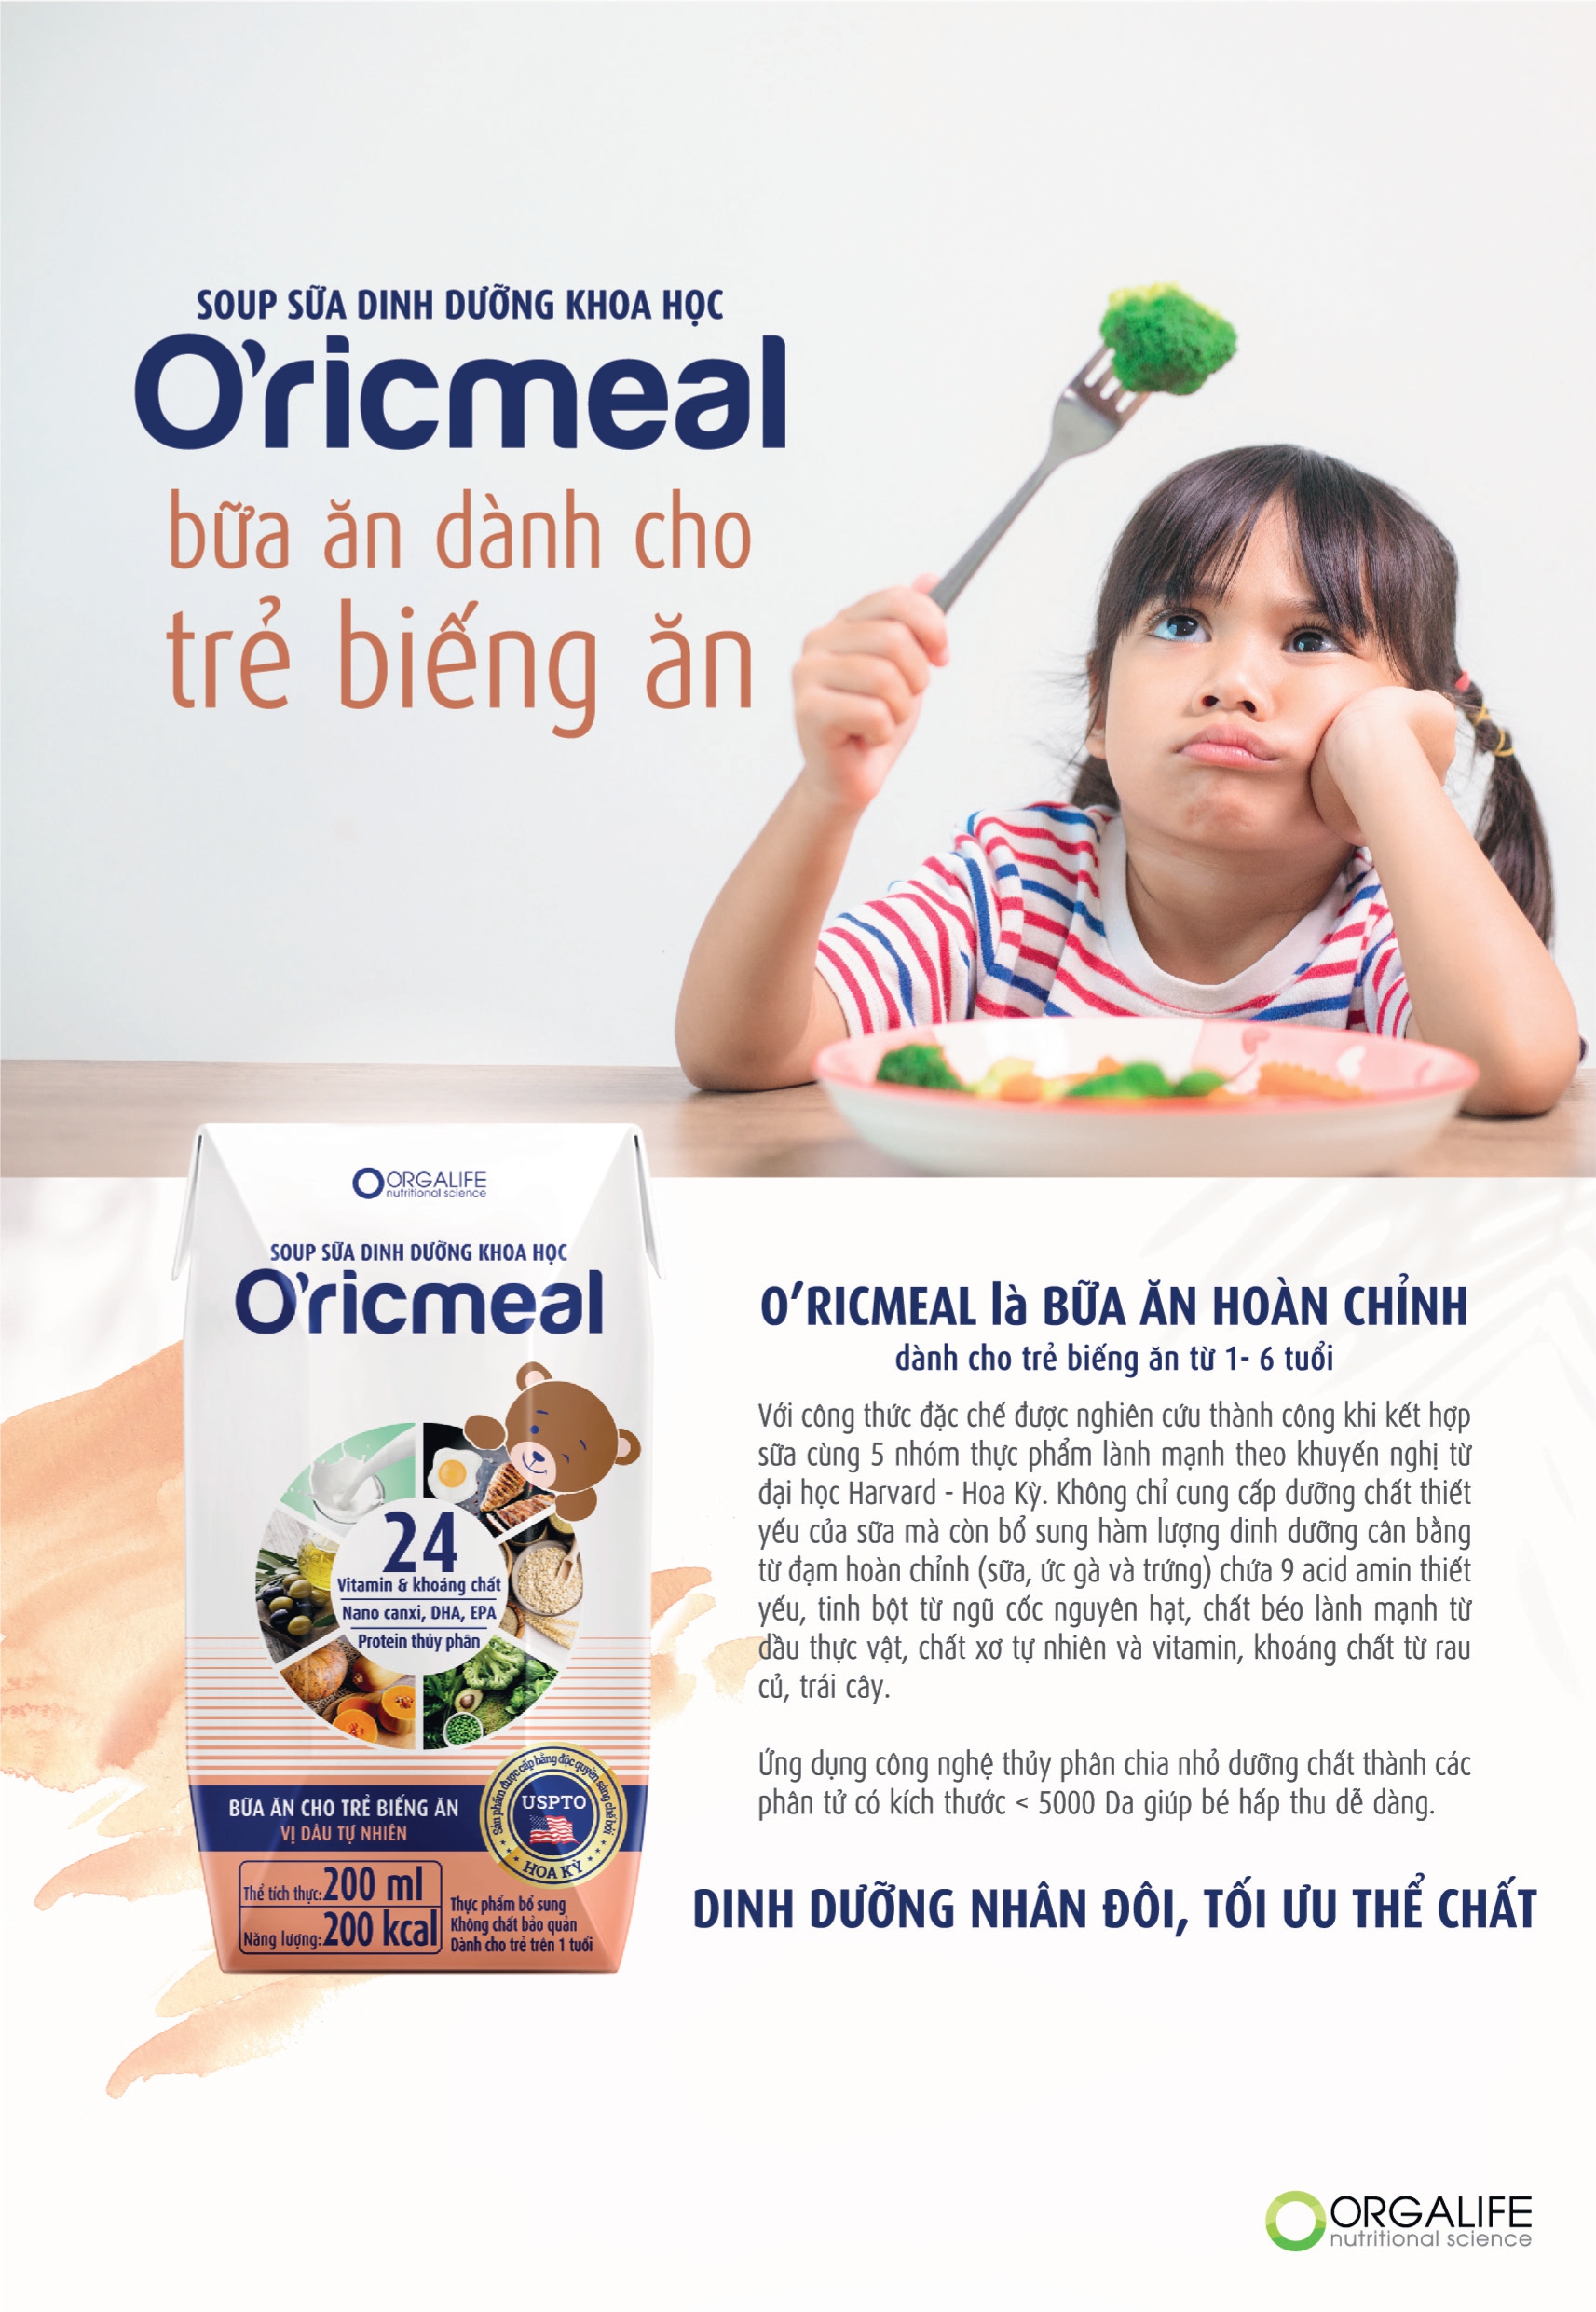 Thùng 36 hộp soup sữa dinh dưỡng O'ricmeal 200ml/hộp-Trẻ biếng ăn, suy dinh dưỡng, thiếu chất, tăng chiều cao, ngủ ngon